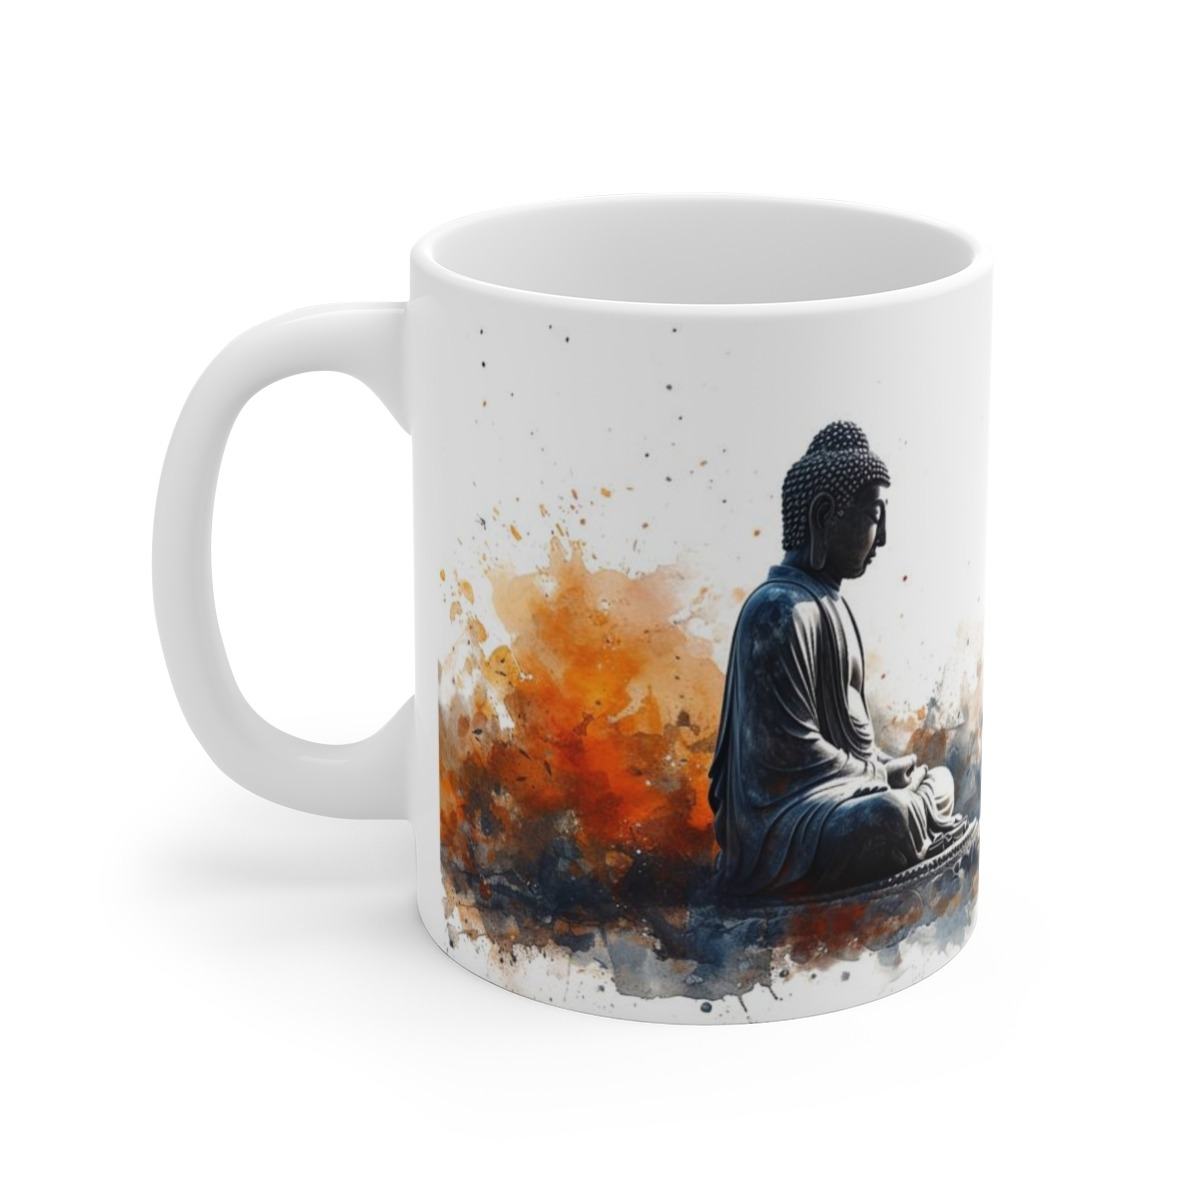 Tasse mit betendem Buddha - Becher mit inspirierendem spirituellem Design - Für Achtsamkeit und Spiritualität